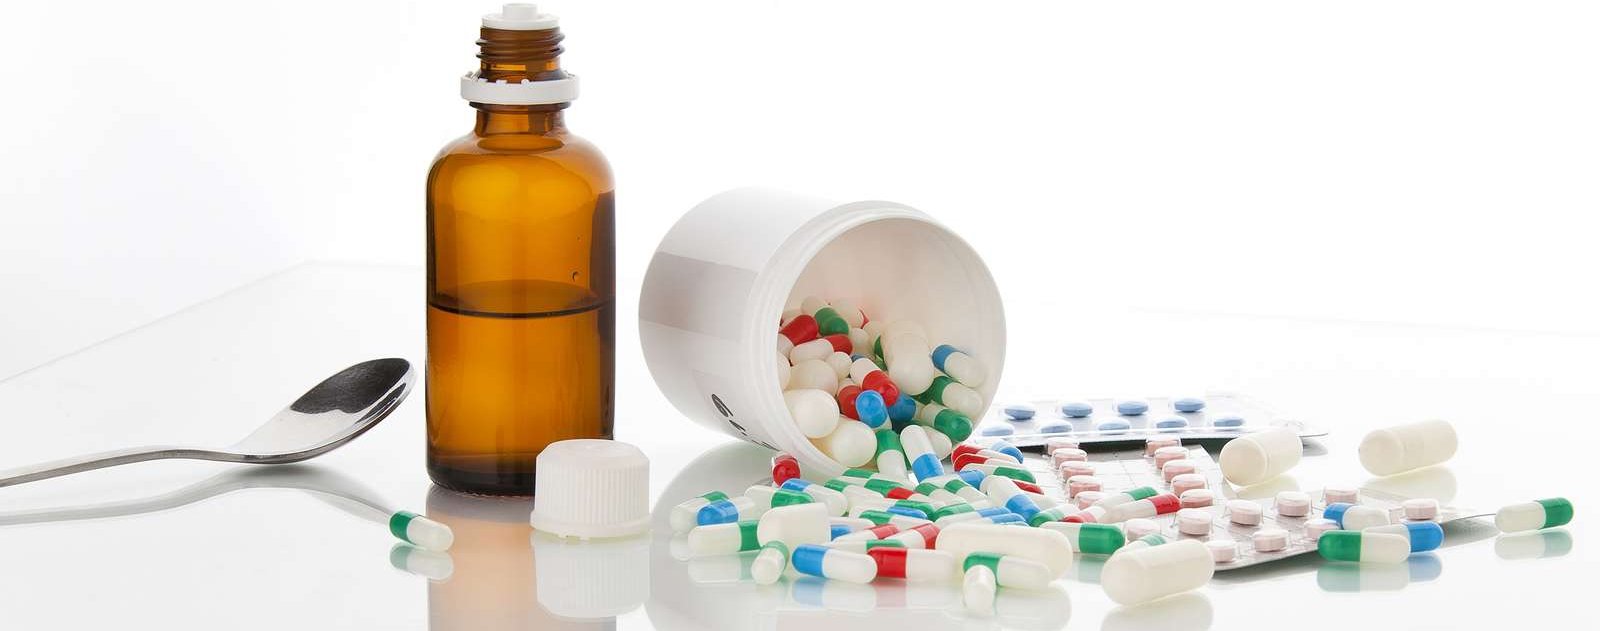 Symbolbild mit Löffel, einer Medikamentenflasche und vielen bunten Tabletten